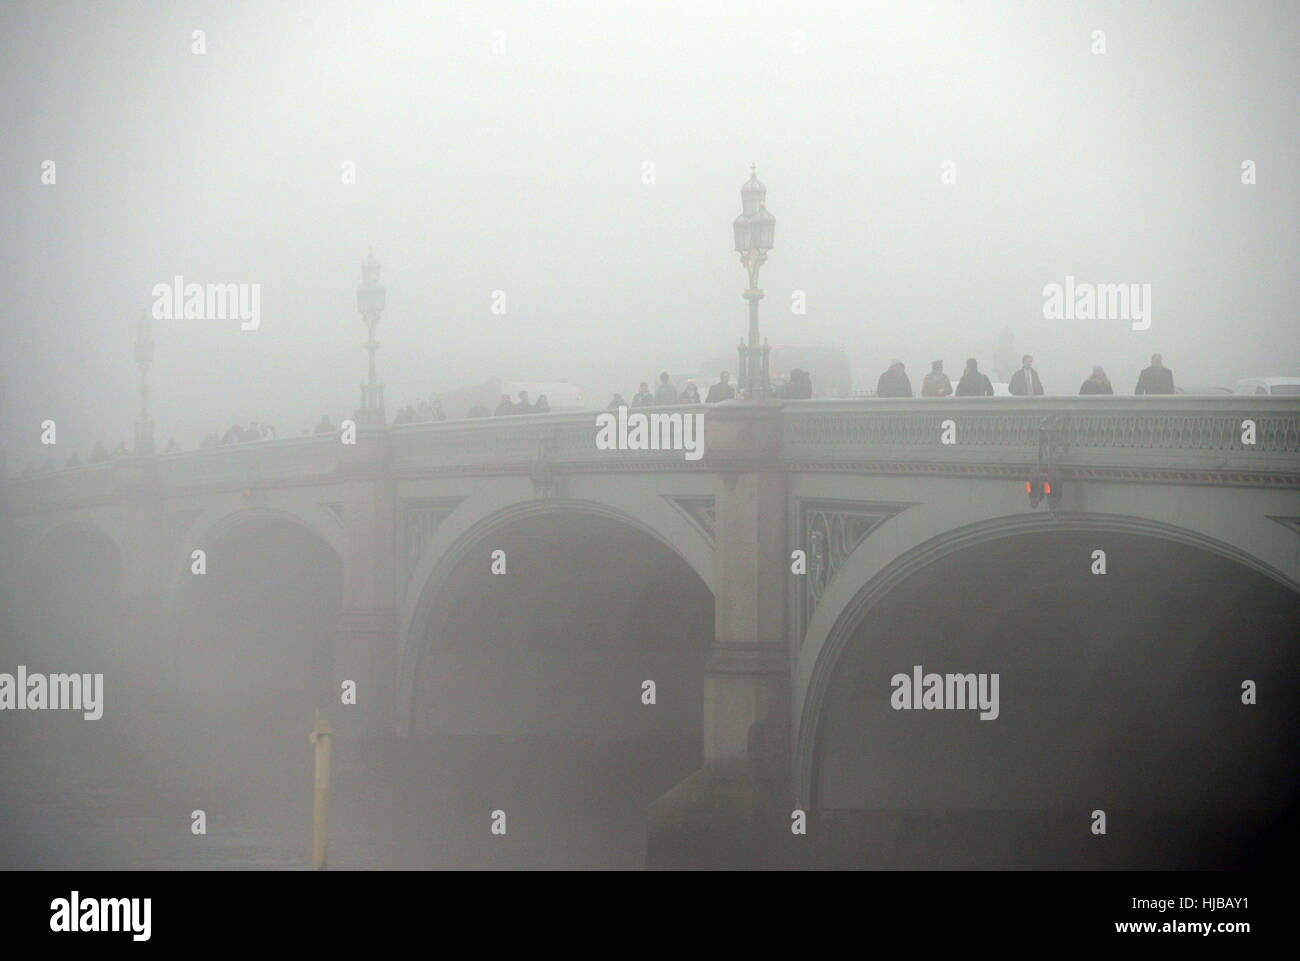 Westminster Bridge in London ist eingehüllt in Nebel, möglichst dichten Nebel verursacht Reisen Unterbrechungen über Südengland, mit Tausenden von Fluggästen gegenüber Annullierungen und Verspätungen. Stockfoto